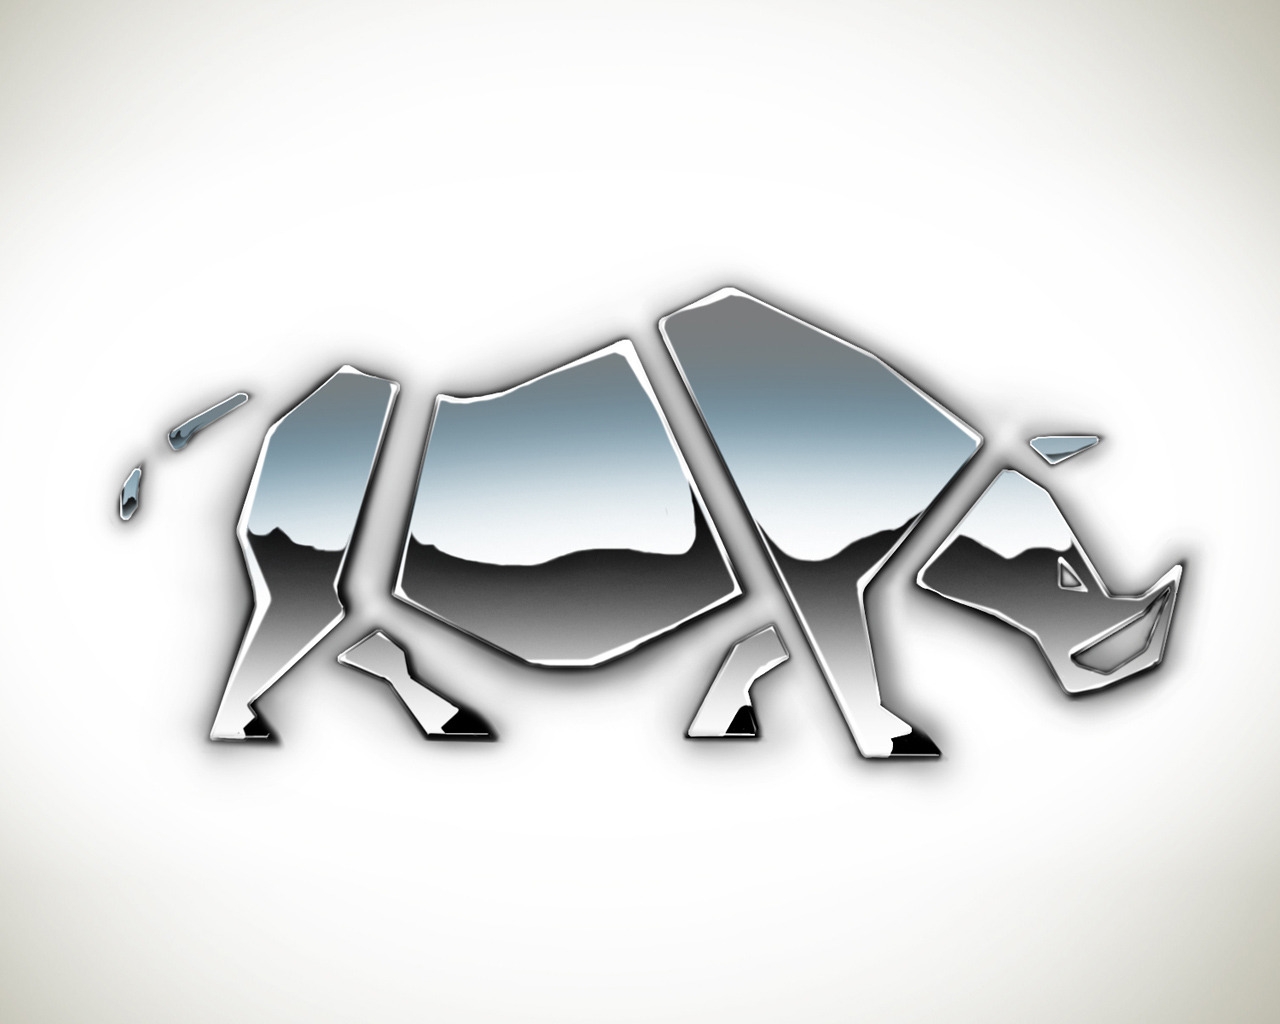 Rhino Shape for 1280 x 1024 resolution